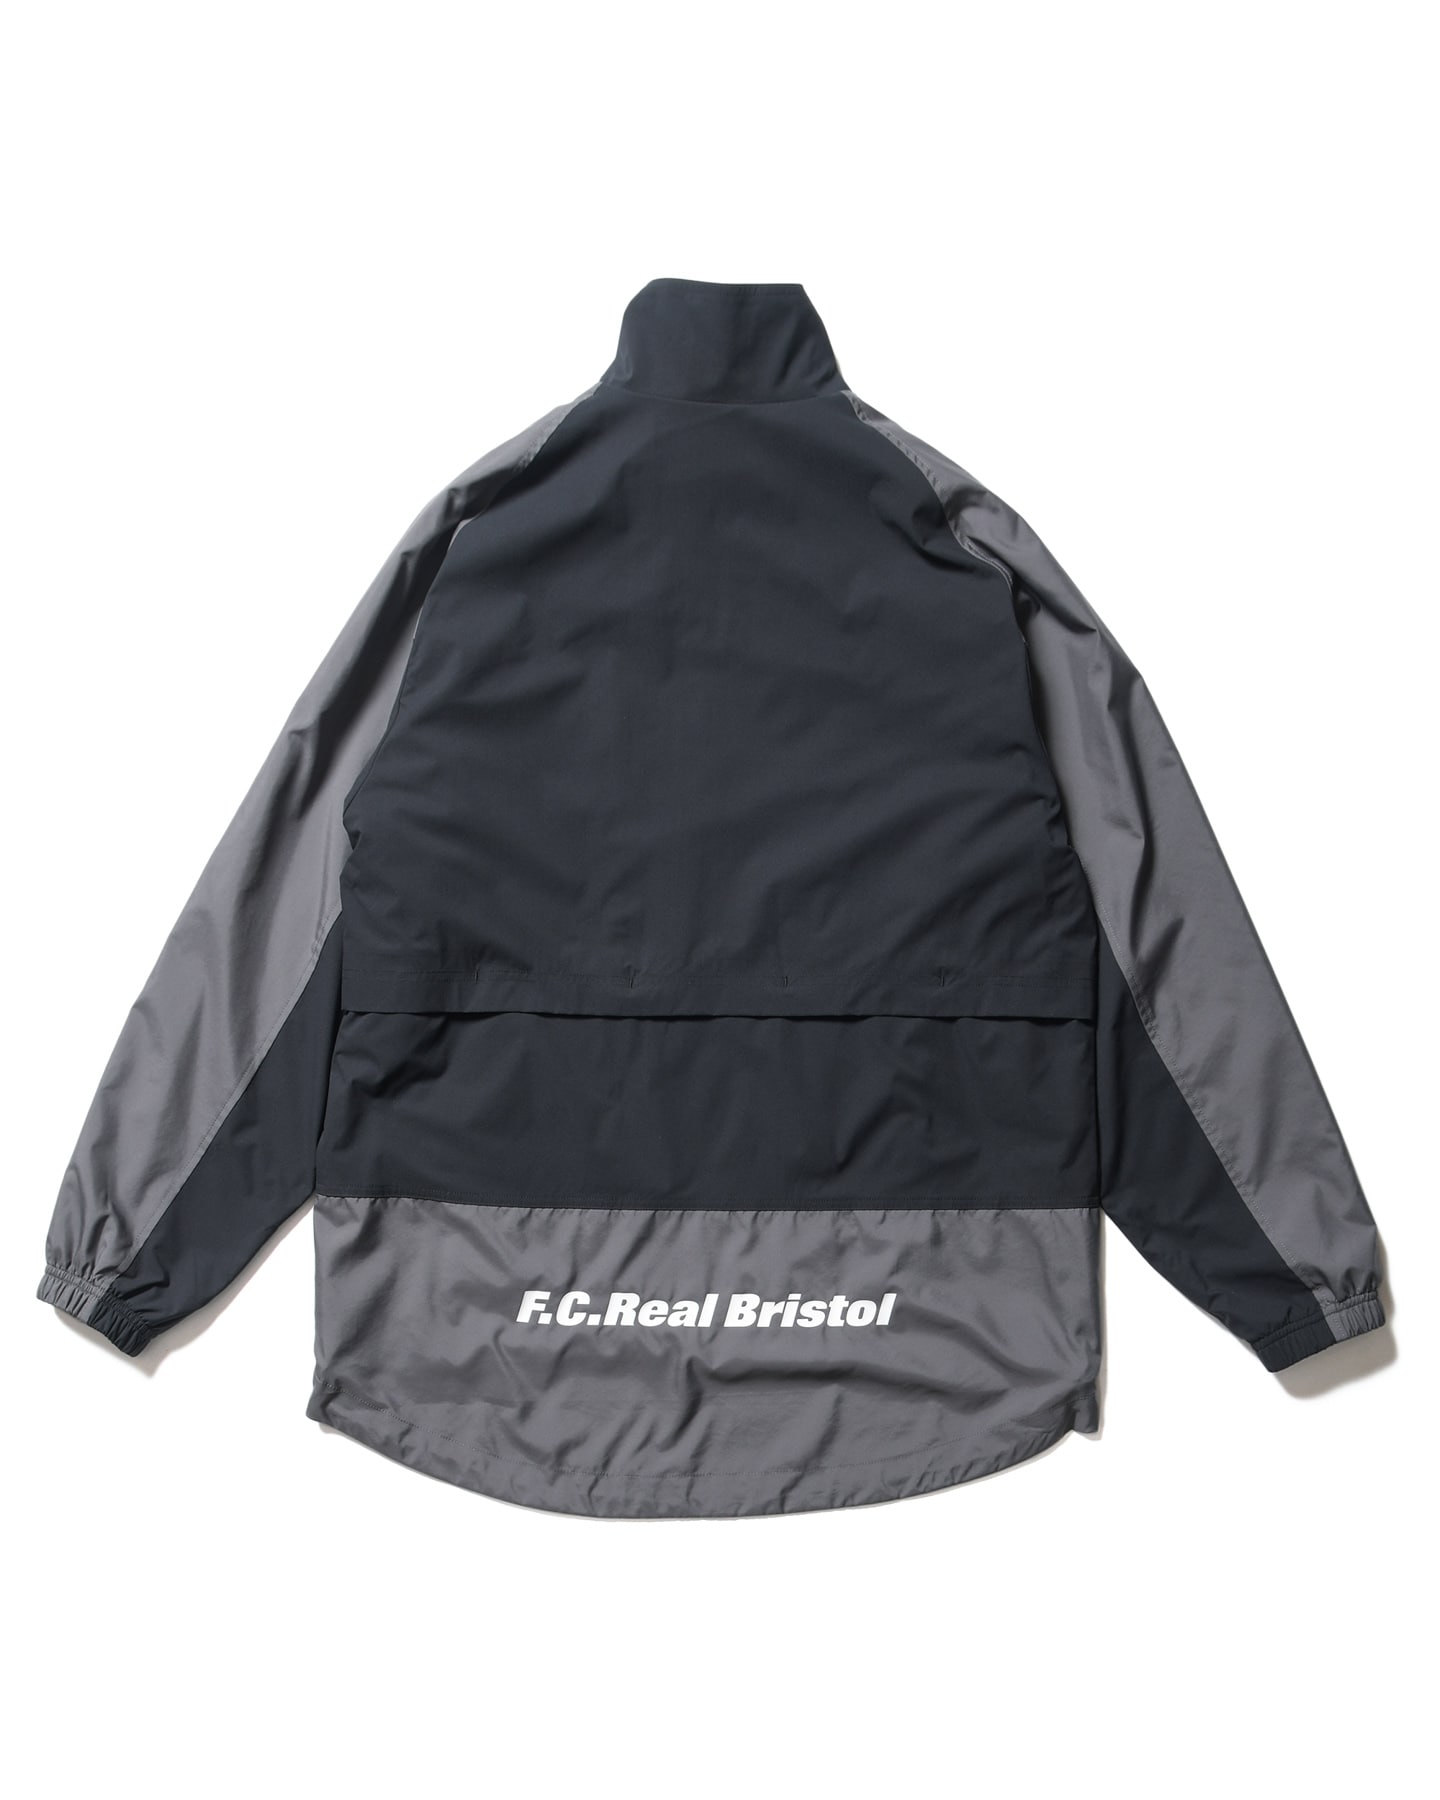 FCRB jacket size S宜しくお願い致します